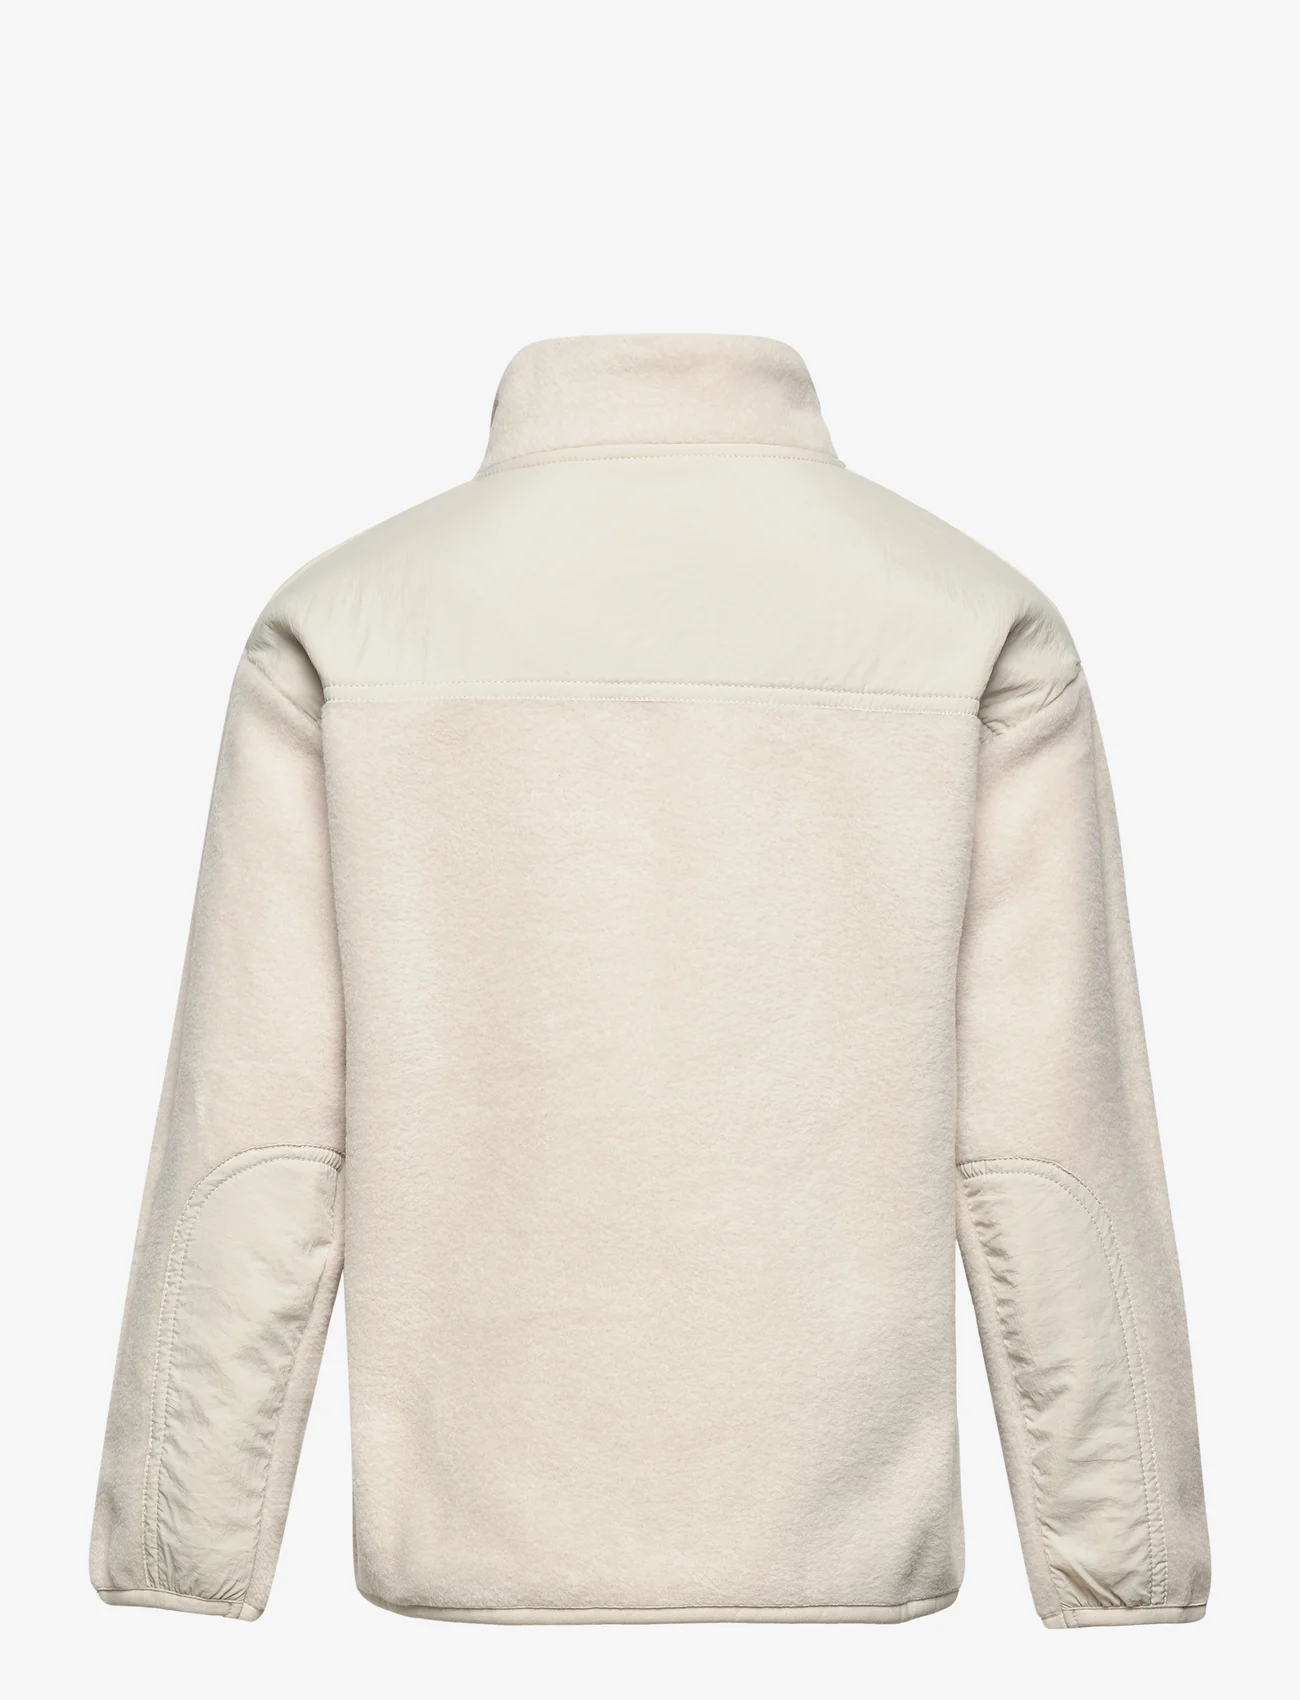 Lindex - Sweater pile thermolite - madalaimad hinnad - light beige - 1